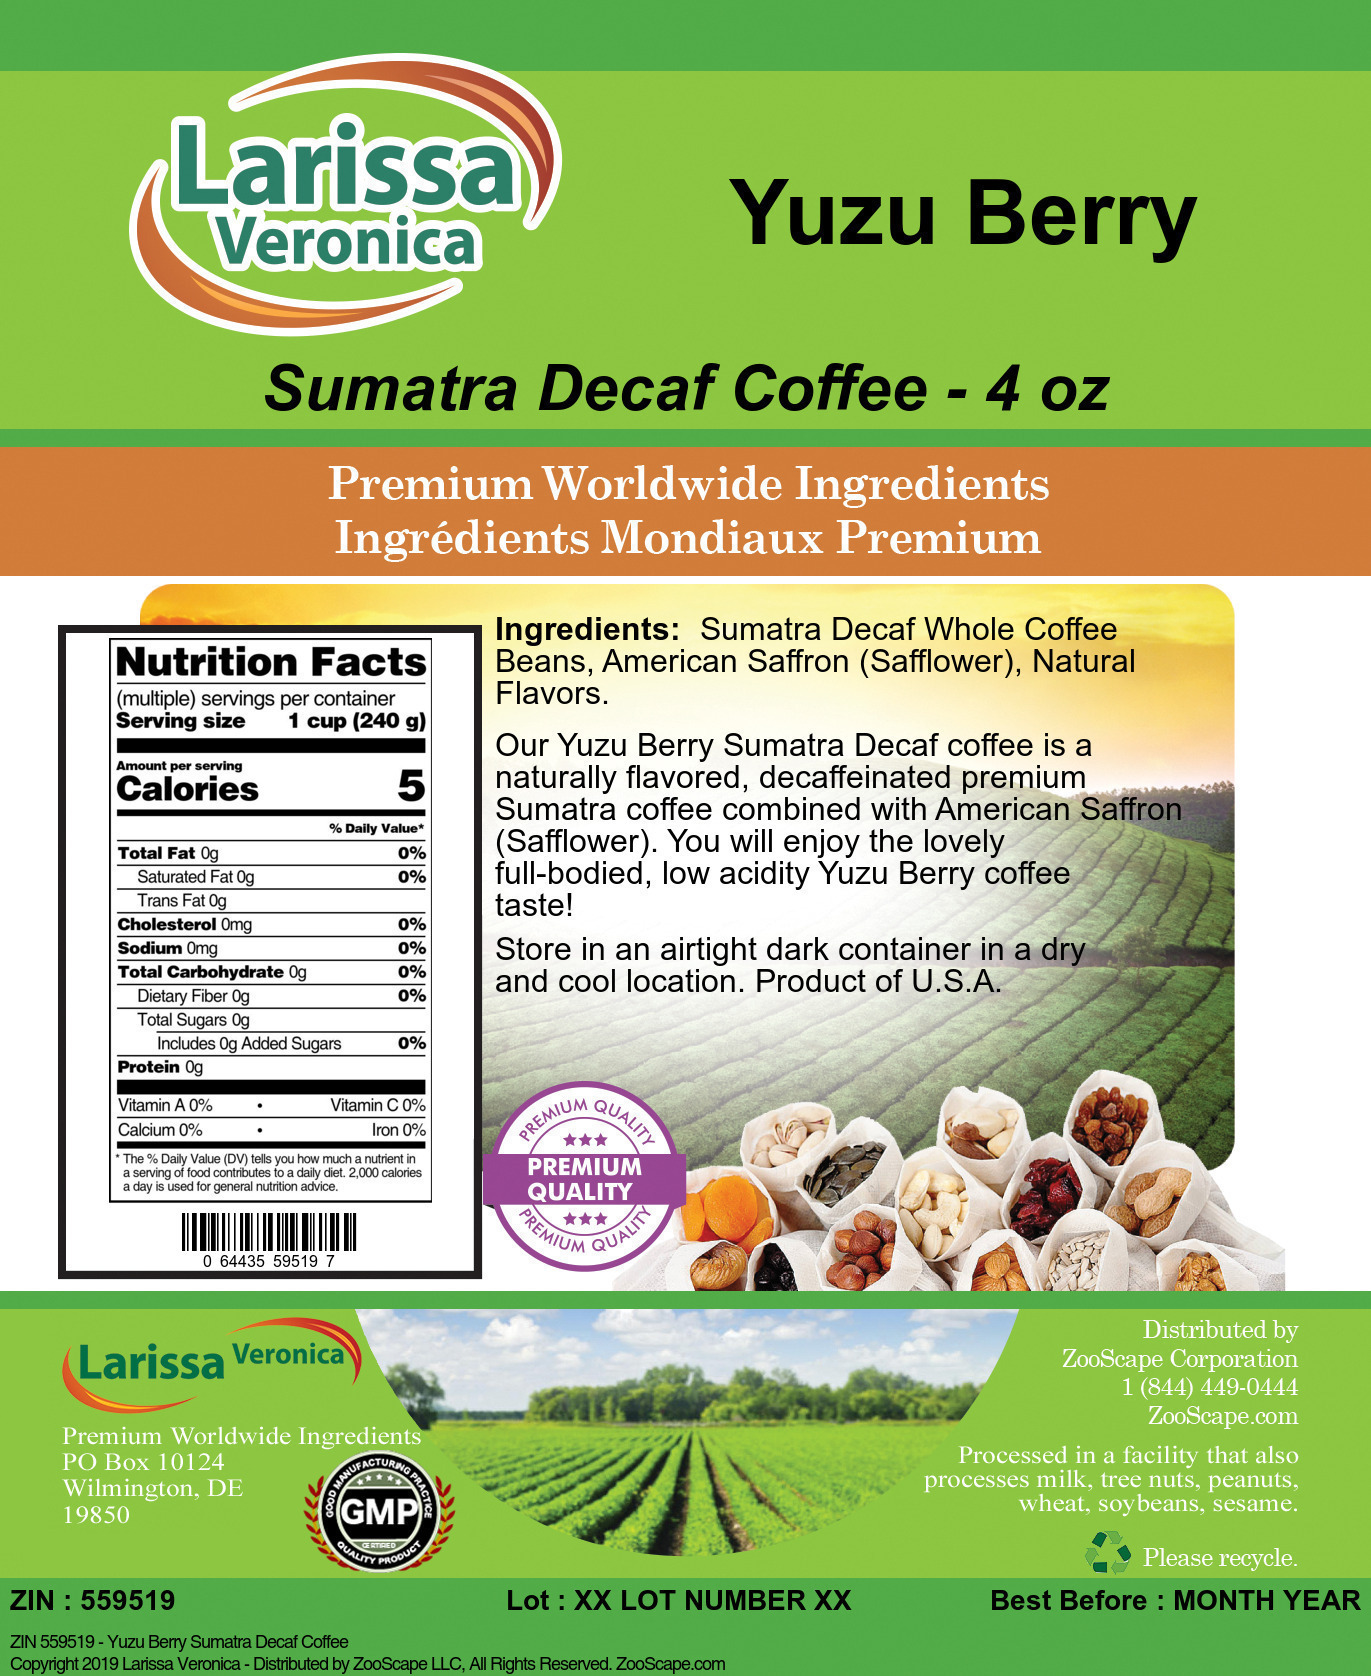 Yuzu Berry Sumatra Decaf Coffee - Label